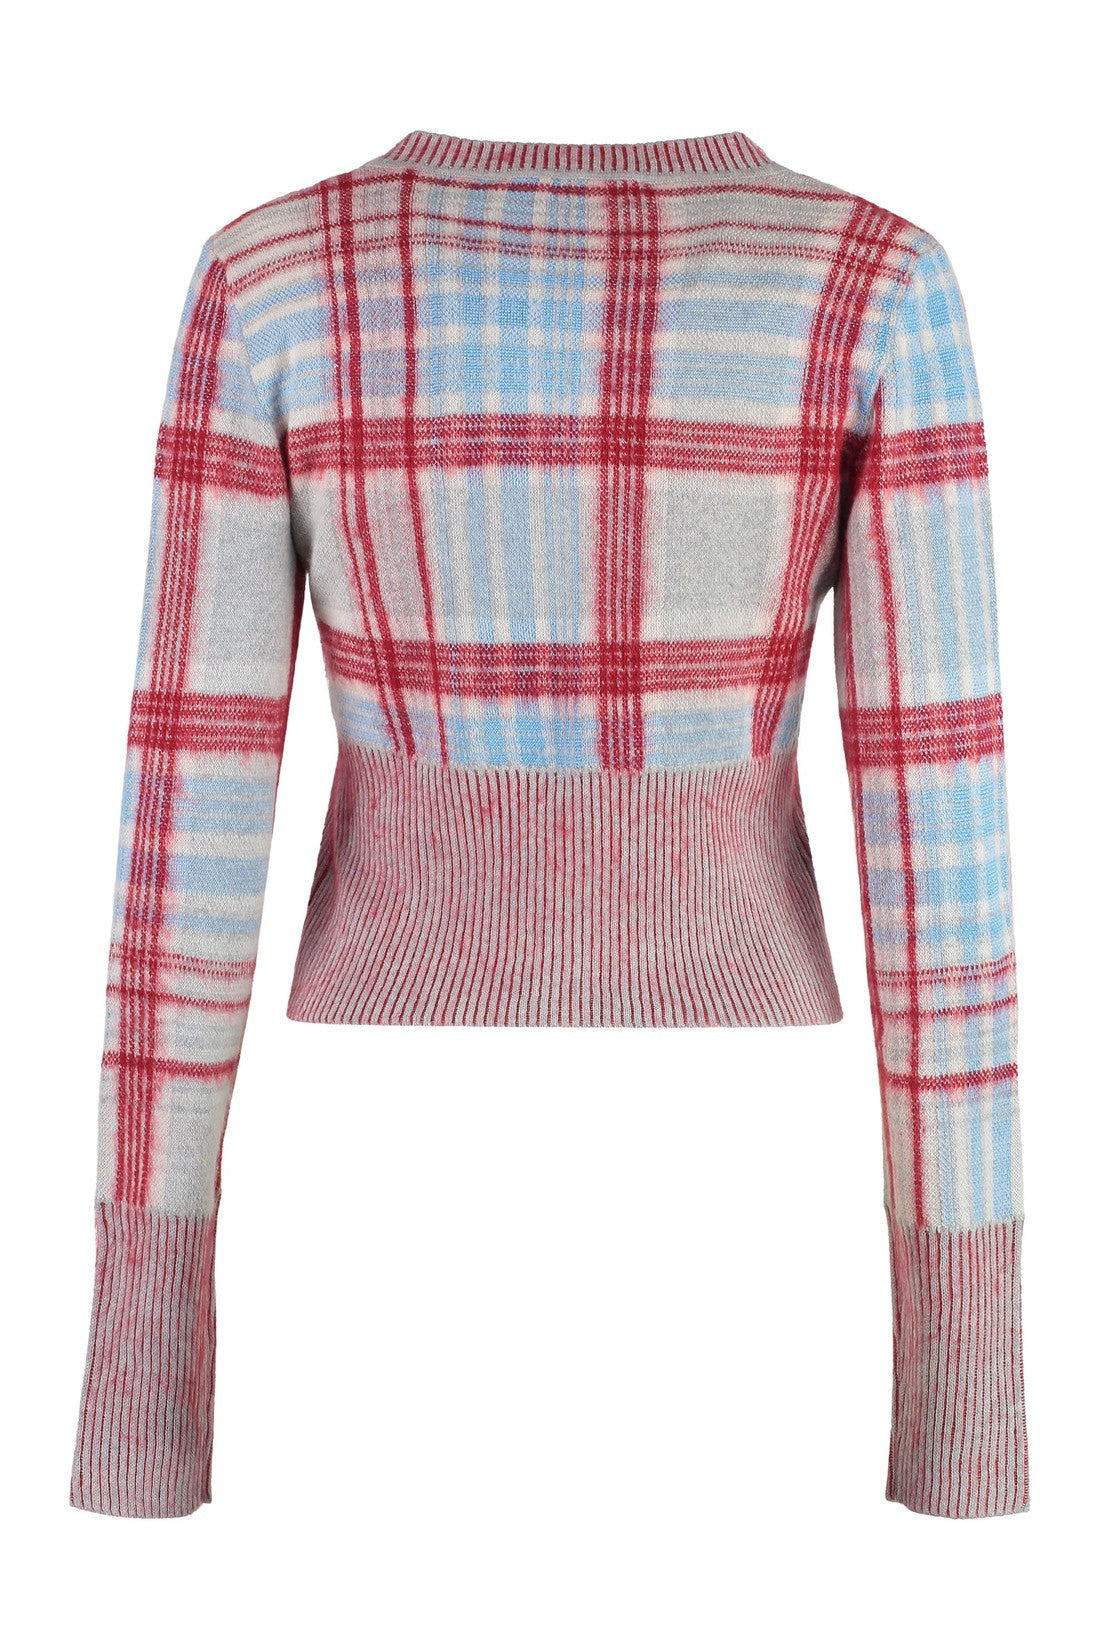 Vivienne Westwood-OUTLET-SALE-Cotton blend cardigan-ARCHIVIST